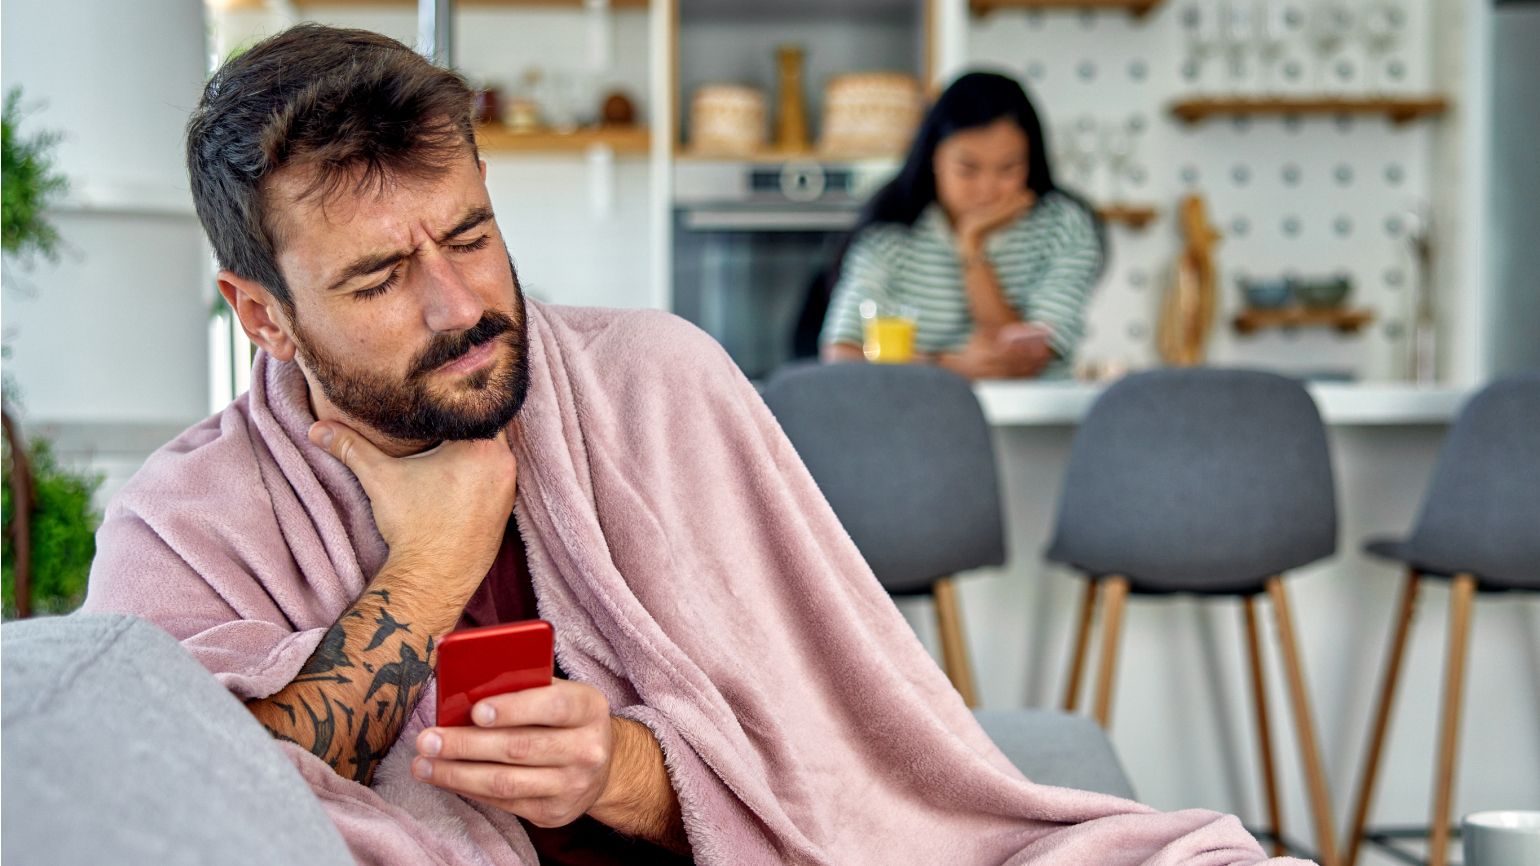 Ein Mann hält in der linken Hand ein Mobiltelefon und fasst sich mit der rechten Hand an den Hals. Im Hintergrund sieht man eine Frau, die an einem Küchentisch sitzt.